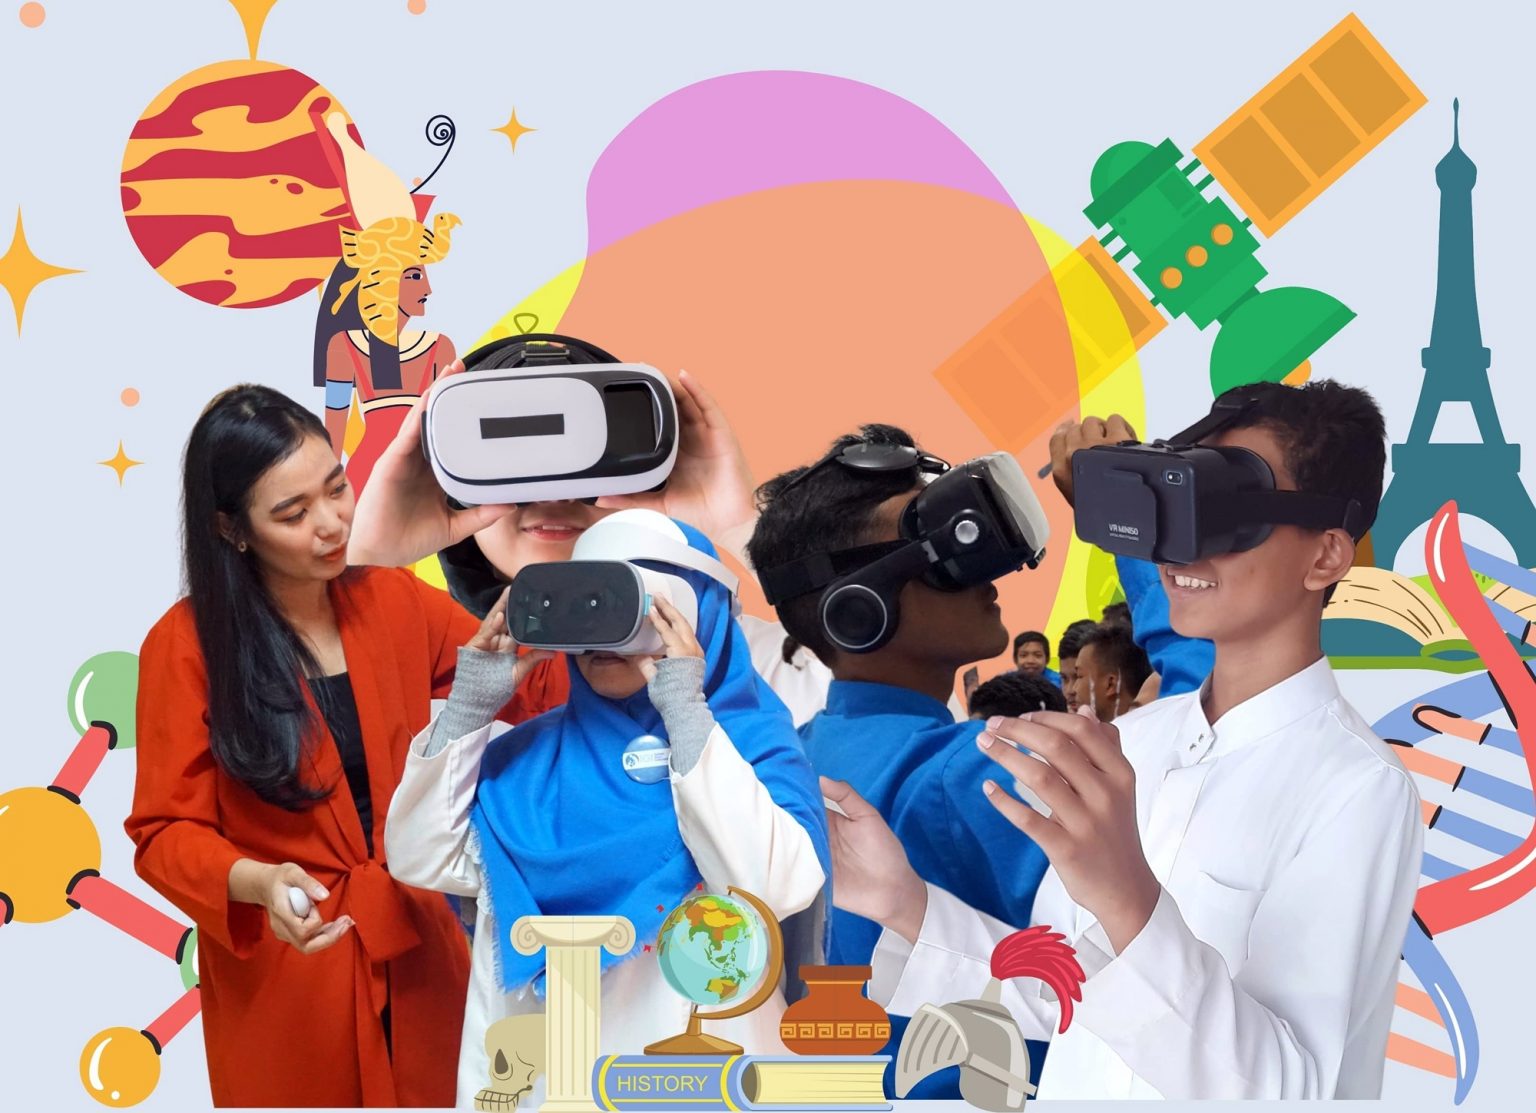 Belajar daring lebih menyenangkan dengan teknologi VR pendidikan ini